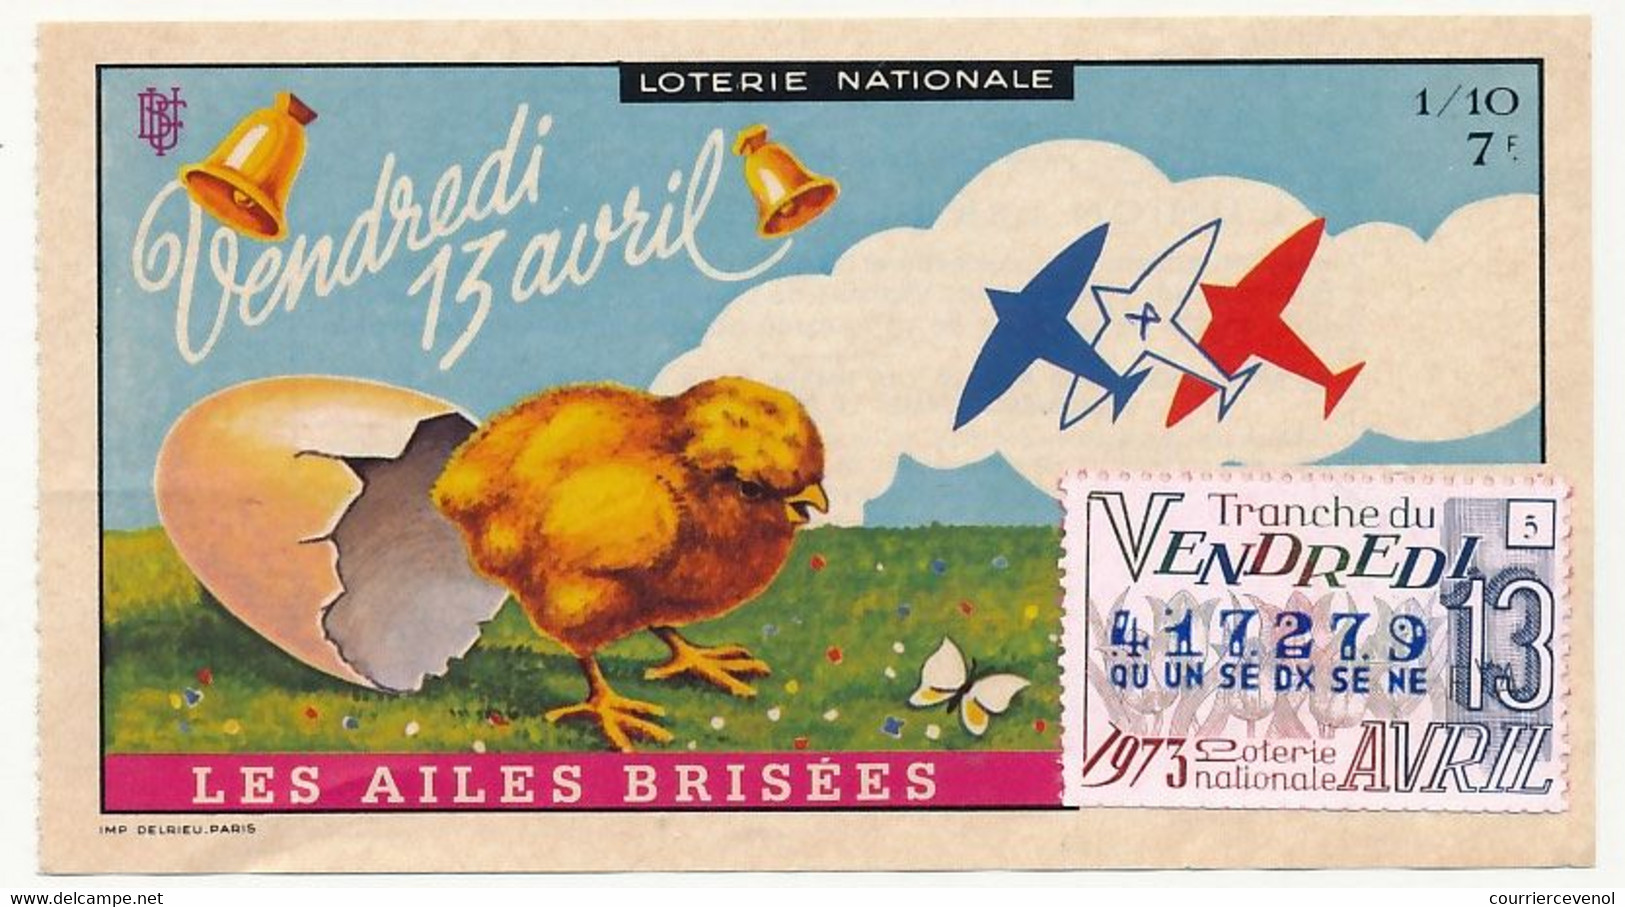 FRANCE - Loterie Nationale - 1/10e Les Ailes Brisées - Vendredi 13 Avril - Tranche Du Vendredi 13 Avril 1973 - Billets De Loterie